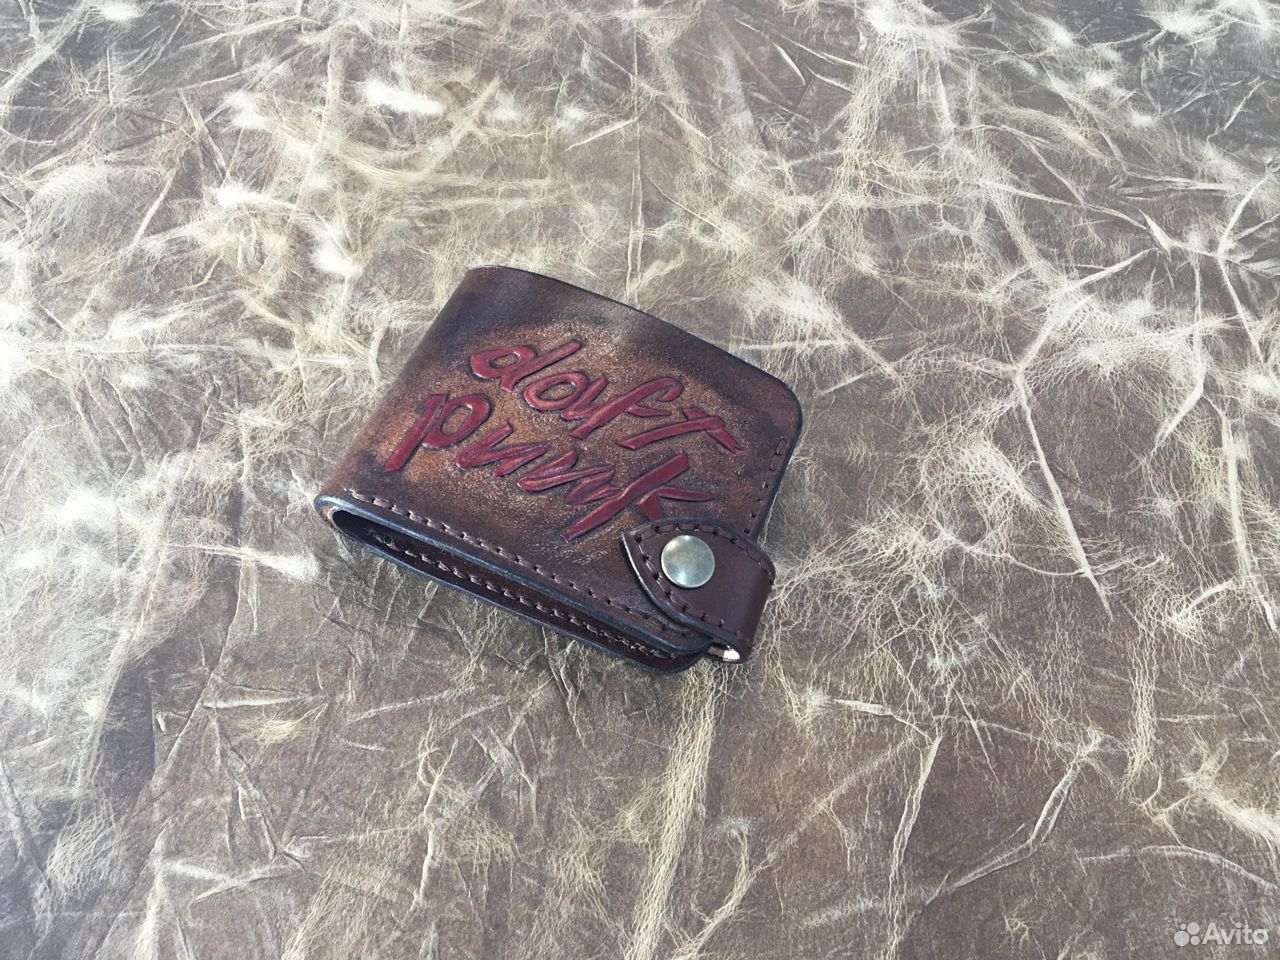 Бумажник из кожи с тиснением Daft Punk 89642979083 купить 2